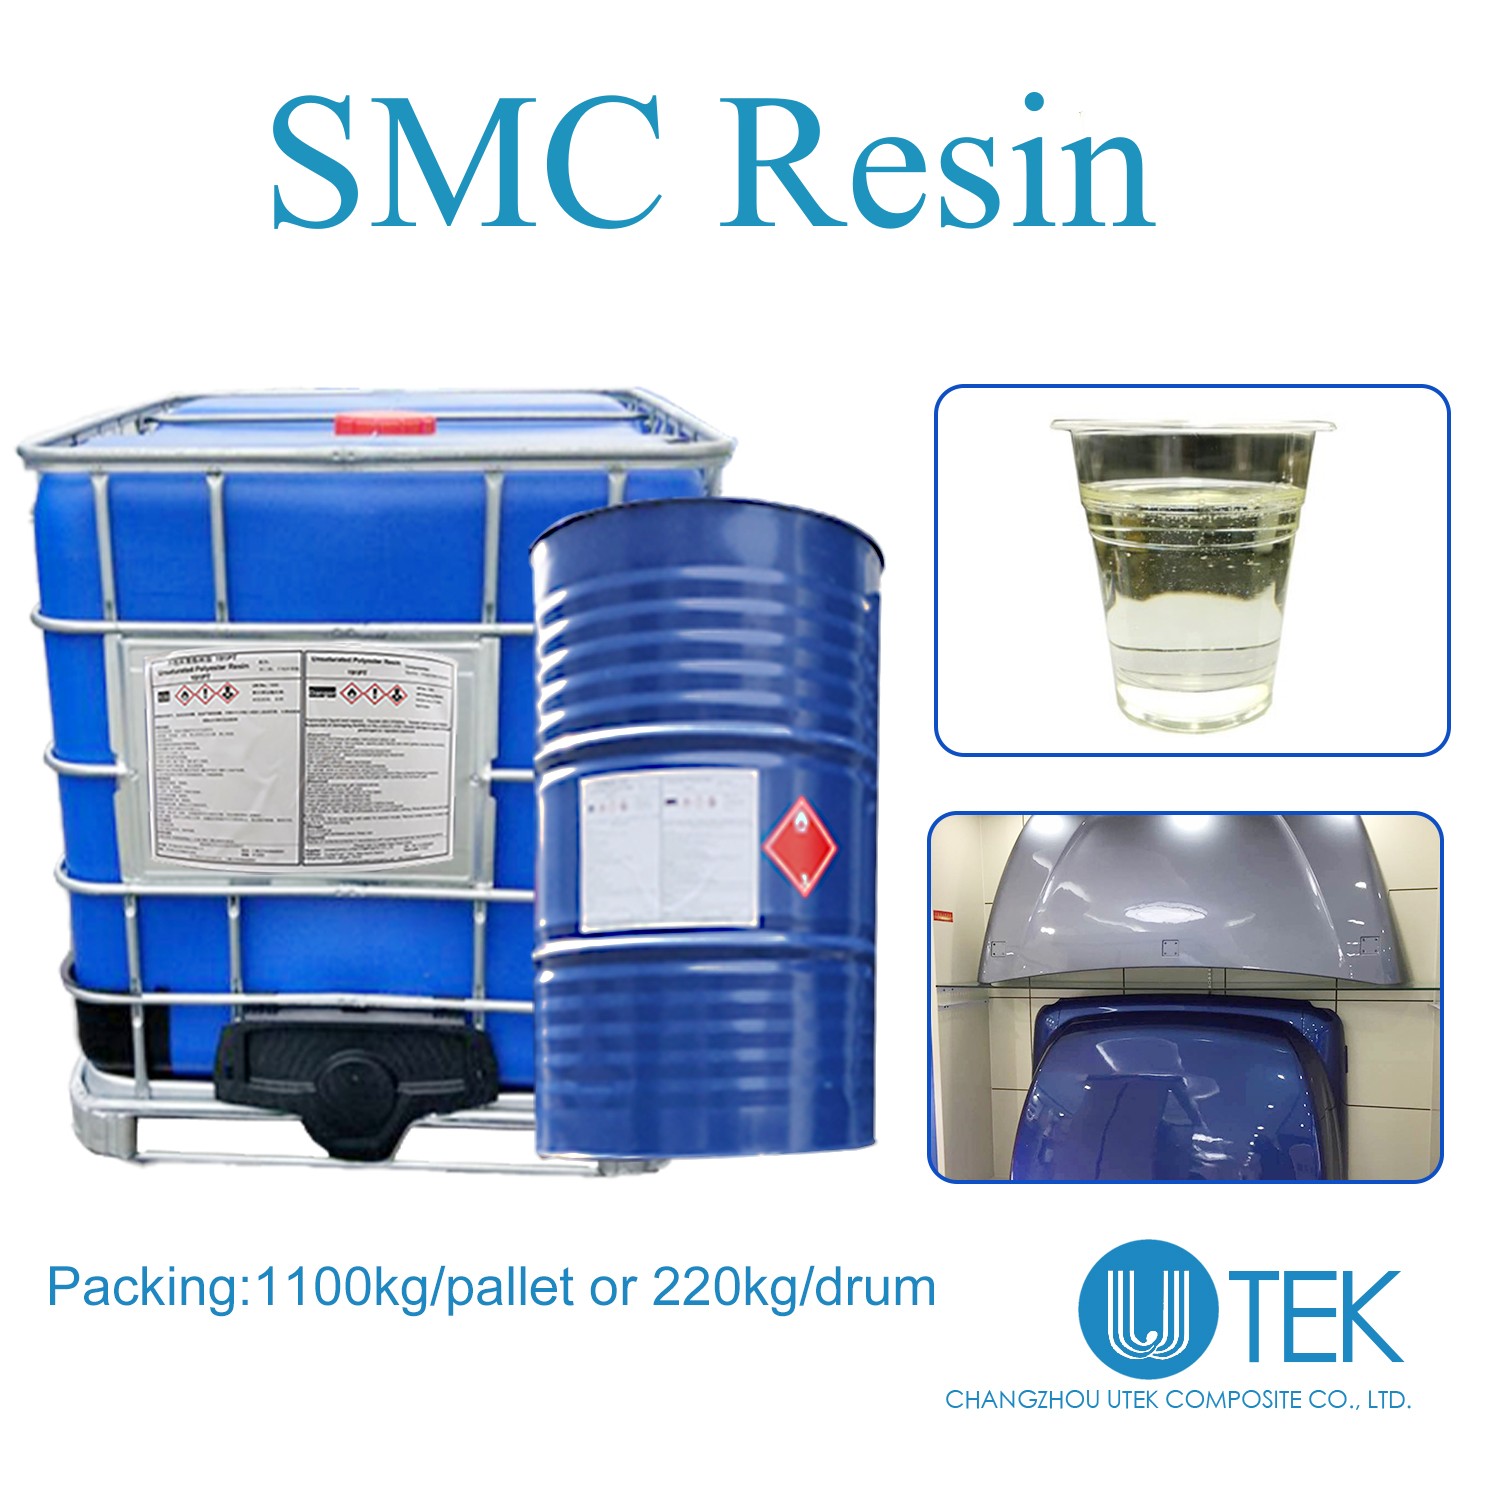 SMC Resin